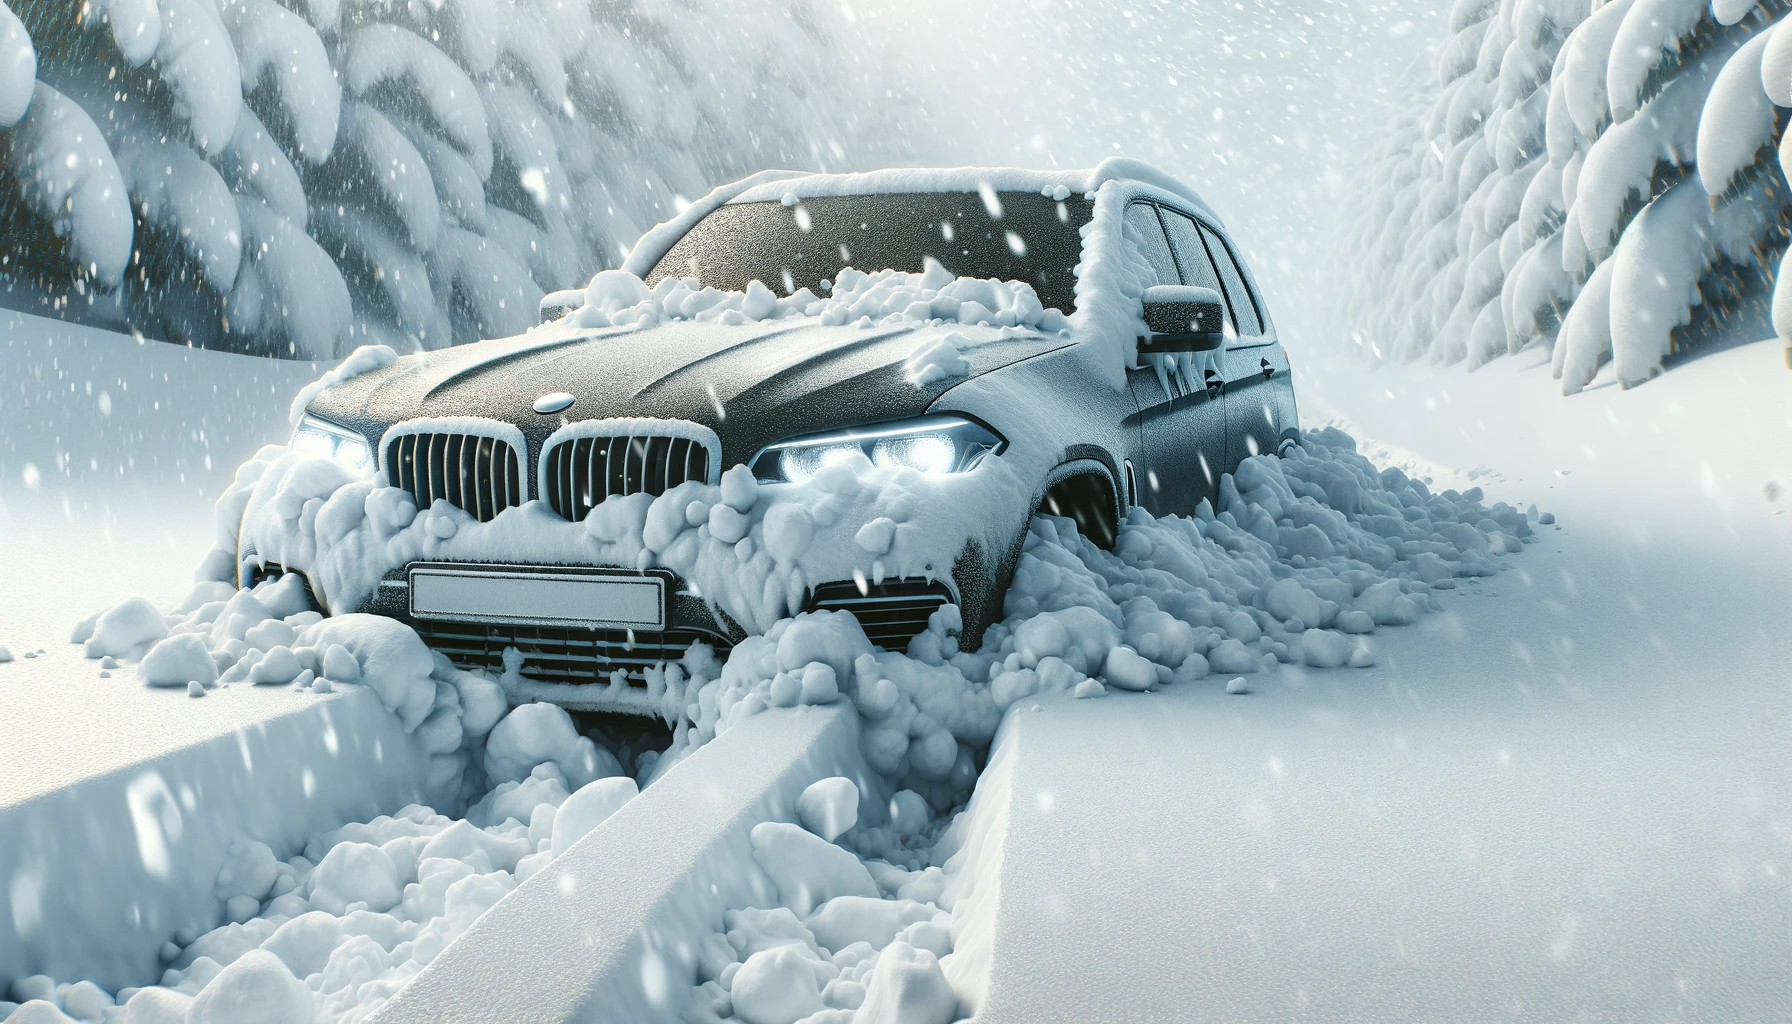 豪雪時のトラブル回避術: 雪が車のバンパー前後や腹下に詰まりスタックする現象の解明と自己解決ガイド